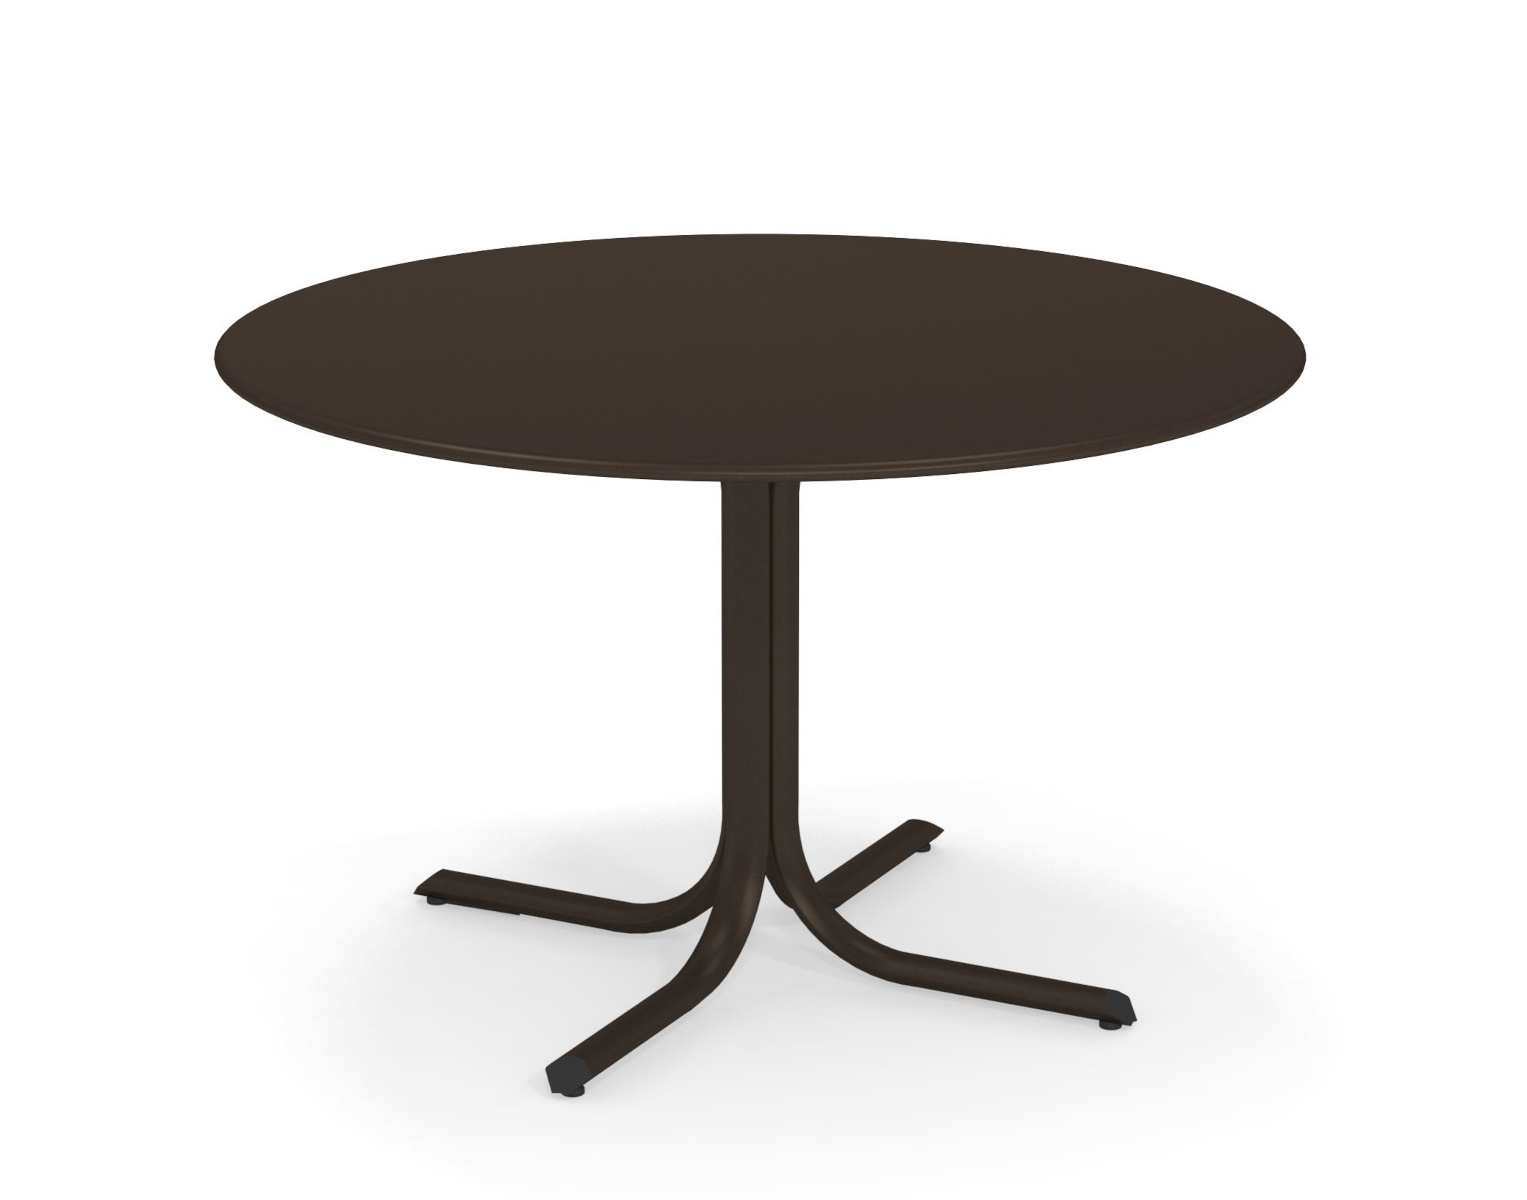 Table System mit runder Tischkante, Ø 117 cm, weiß